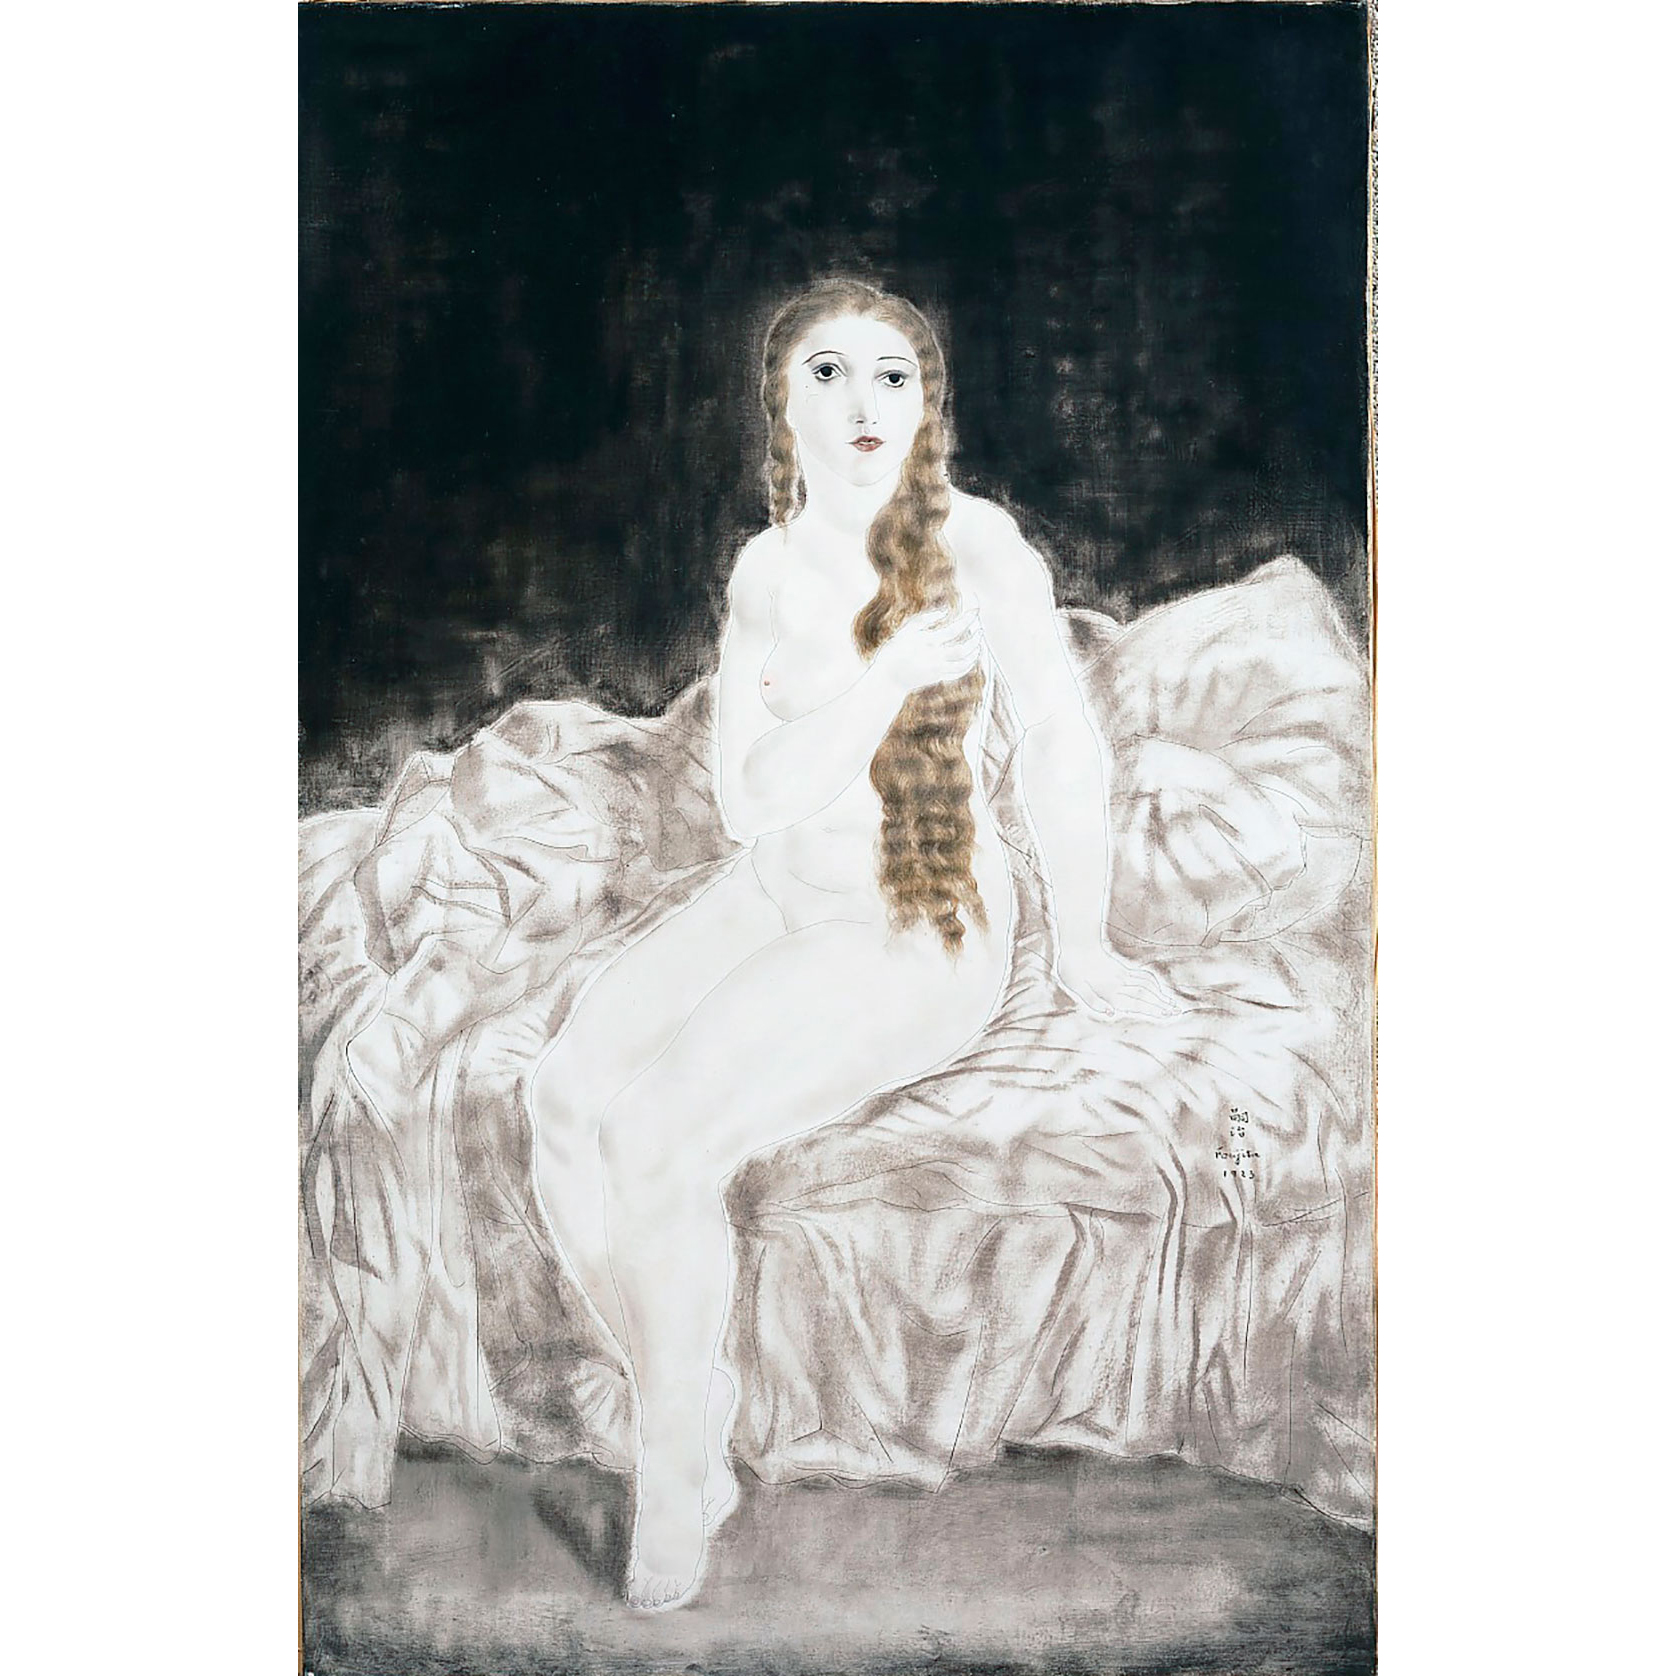 画家・藤田嗣治による静物画から、1920年代のパリを想う